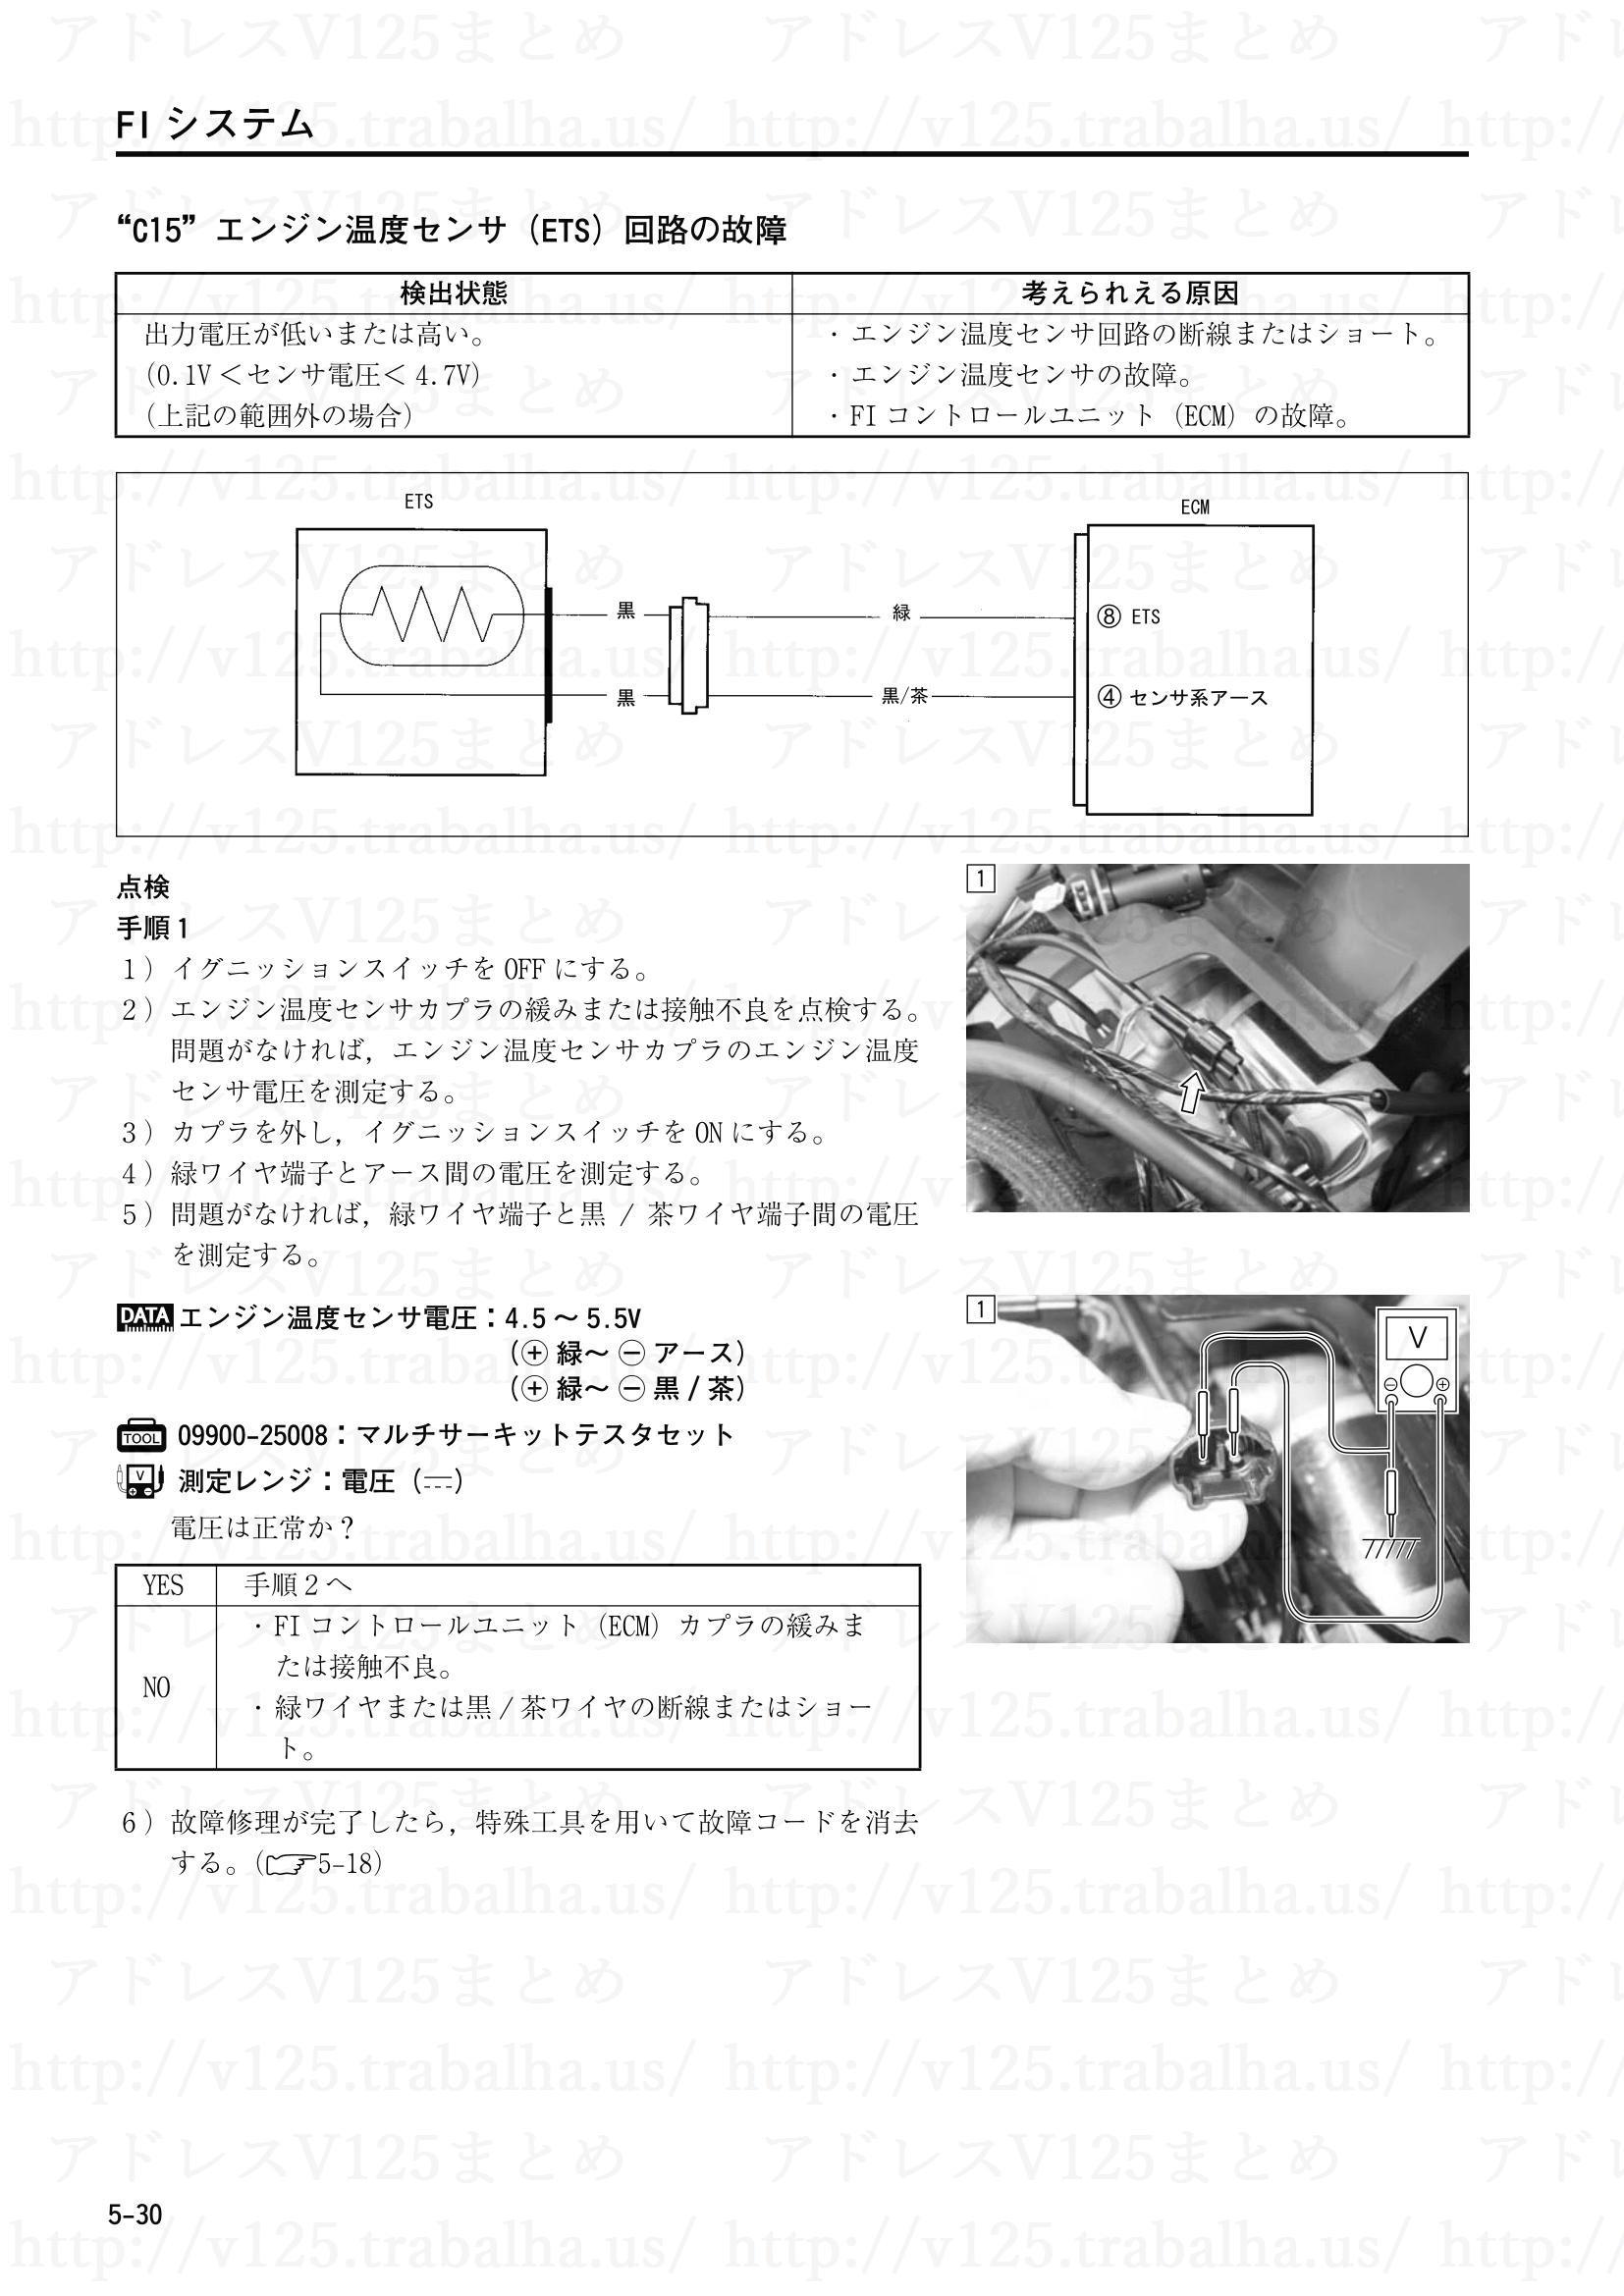 5-30【FIシステム】“C15”エンジン温度センサ(ETS)回路の故障1